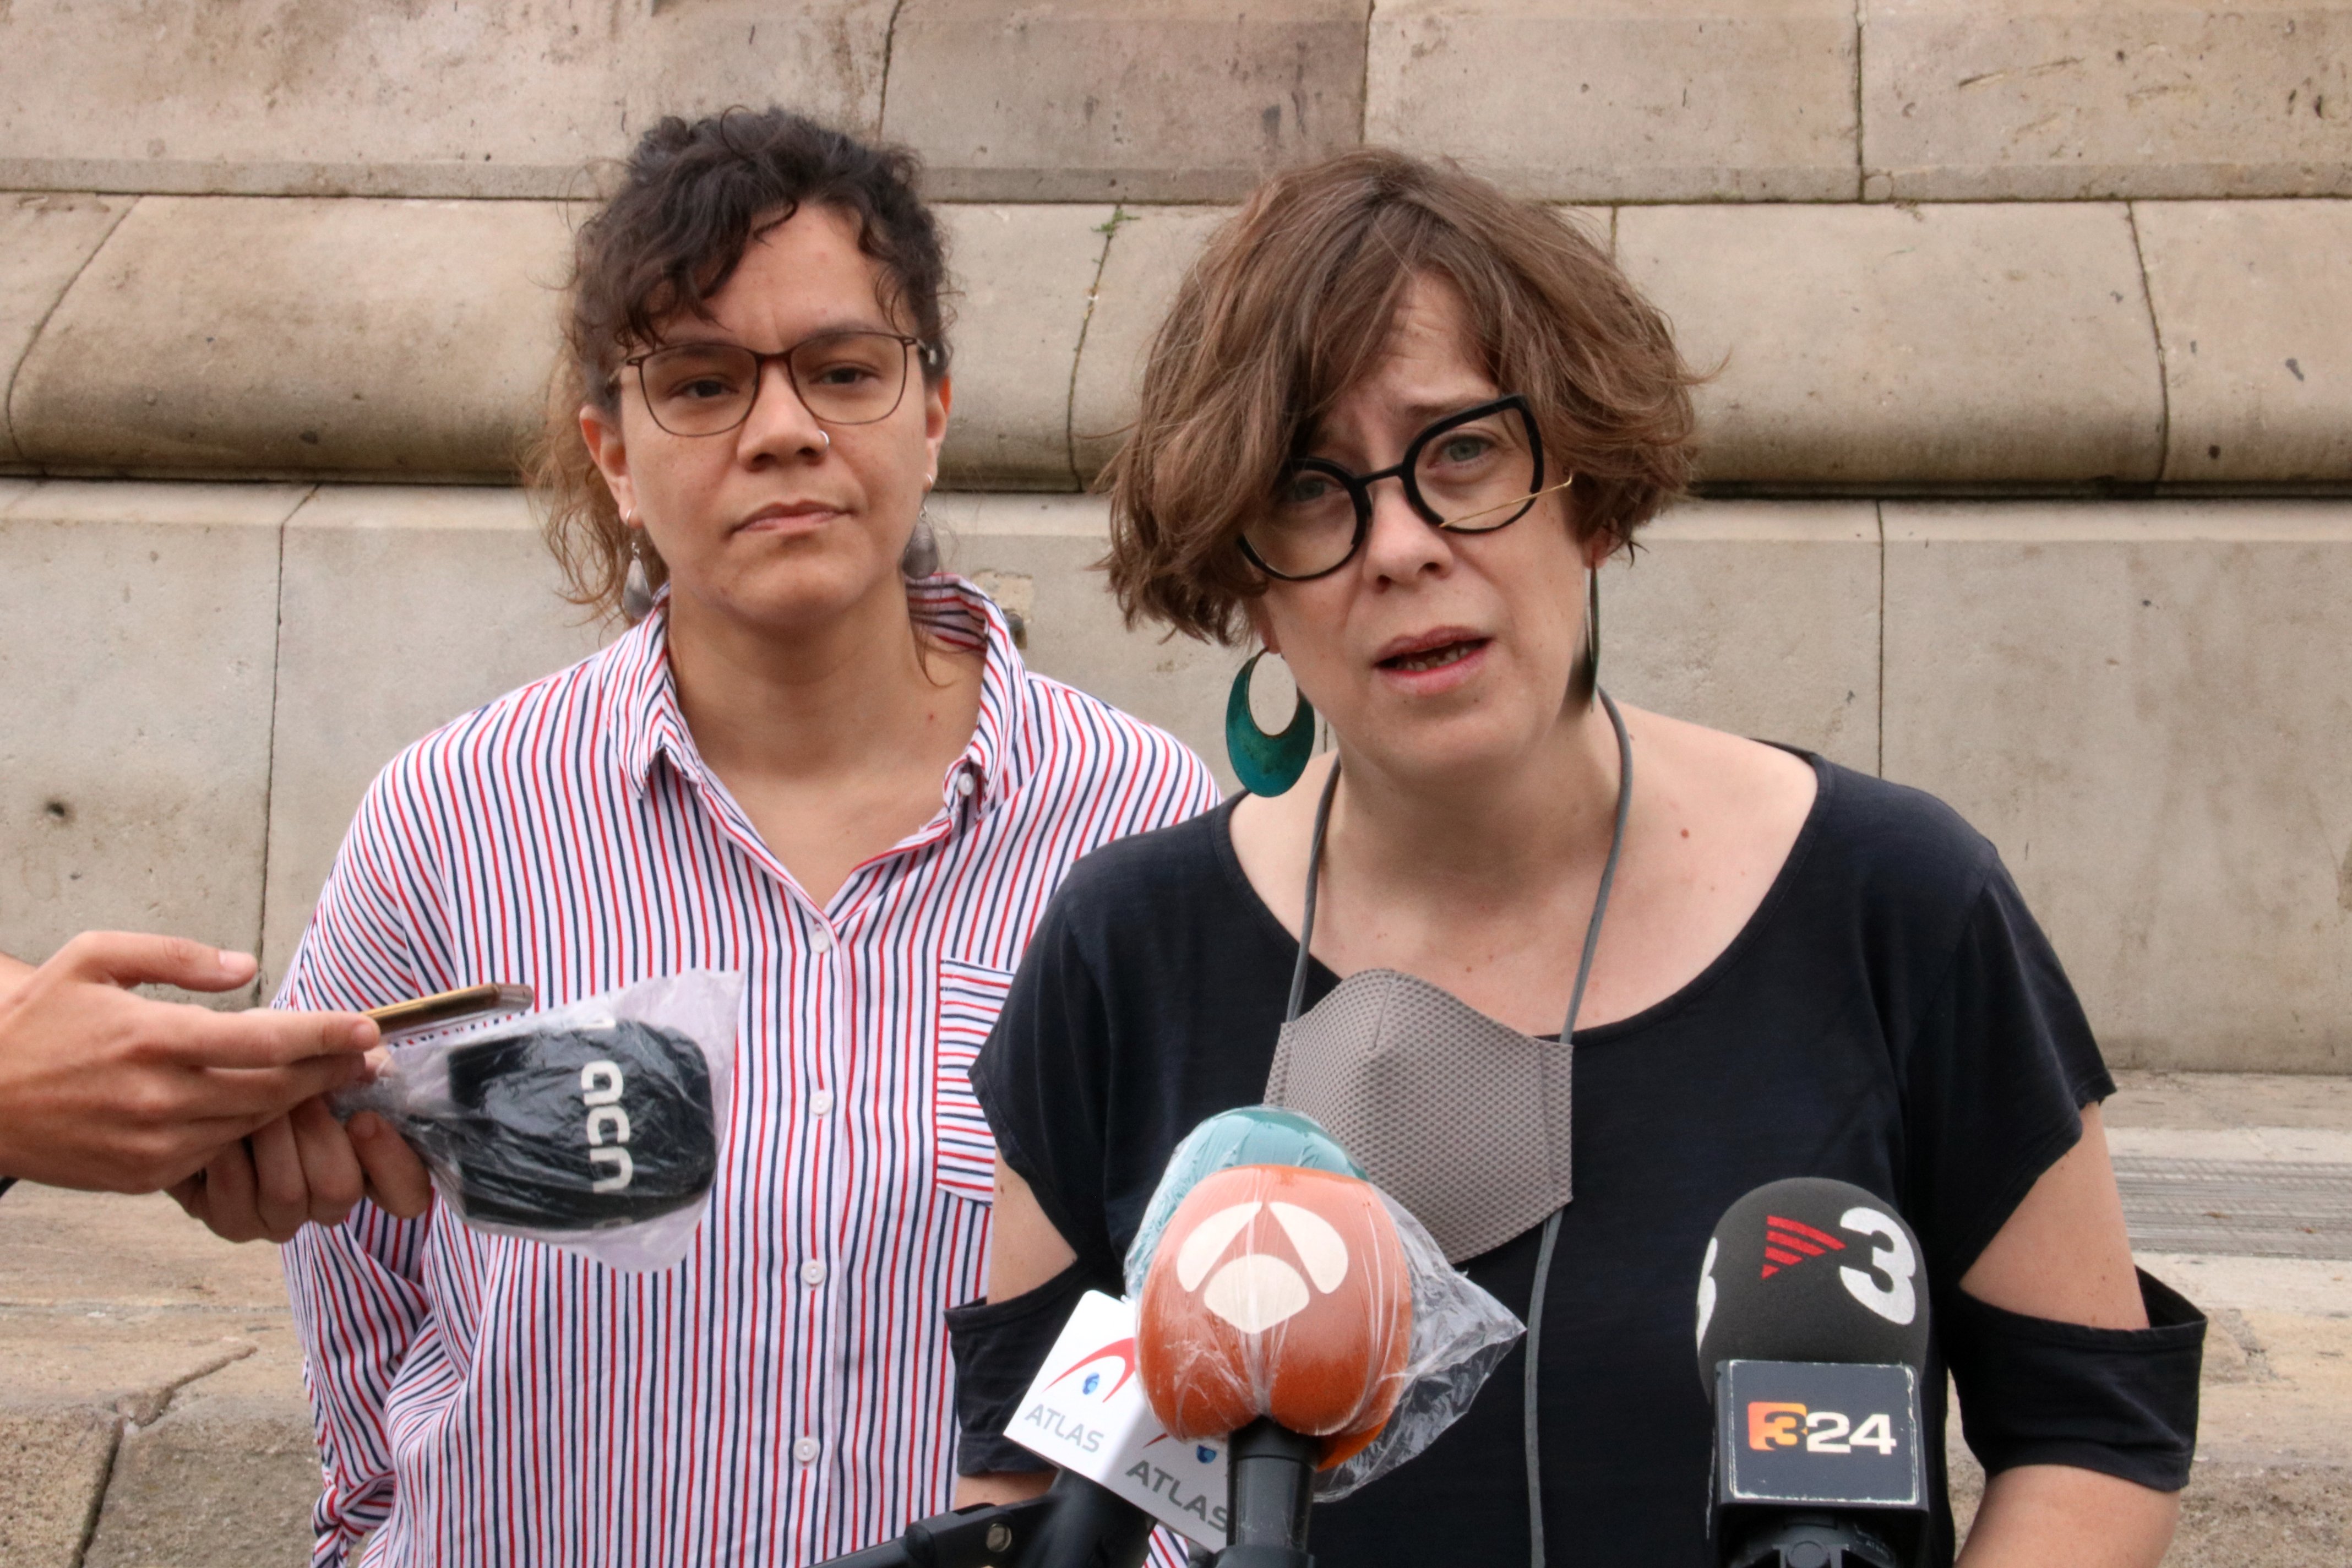 La CUP insisteix a retirar l'estàtua de Colom: "Barcelona ha de fer els deures"